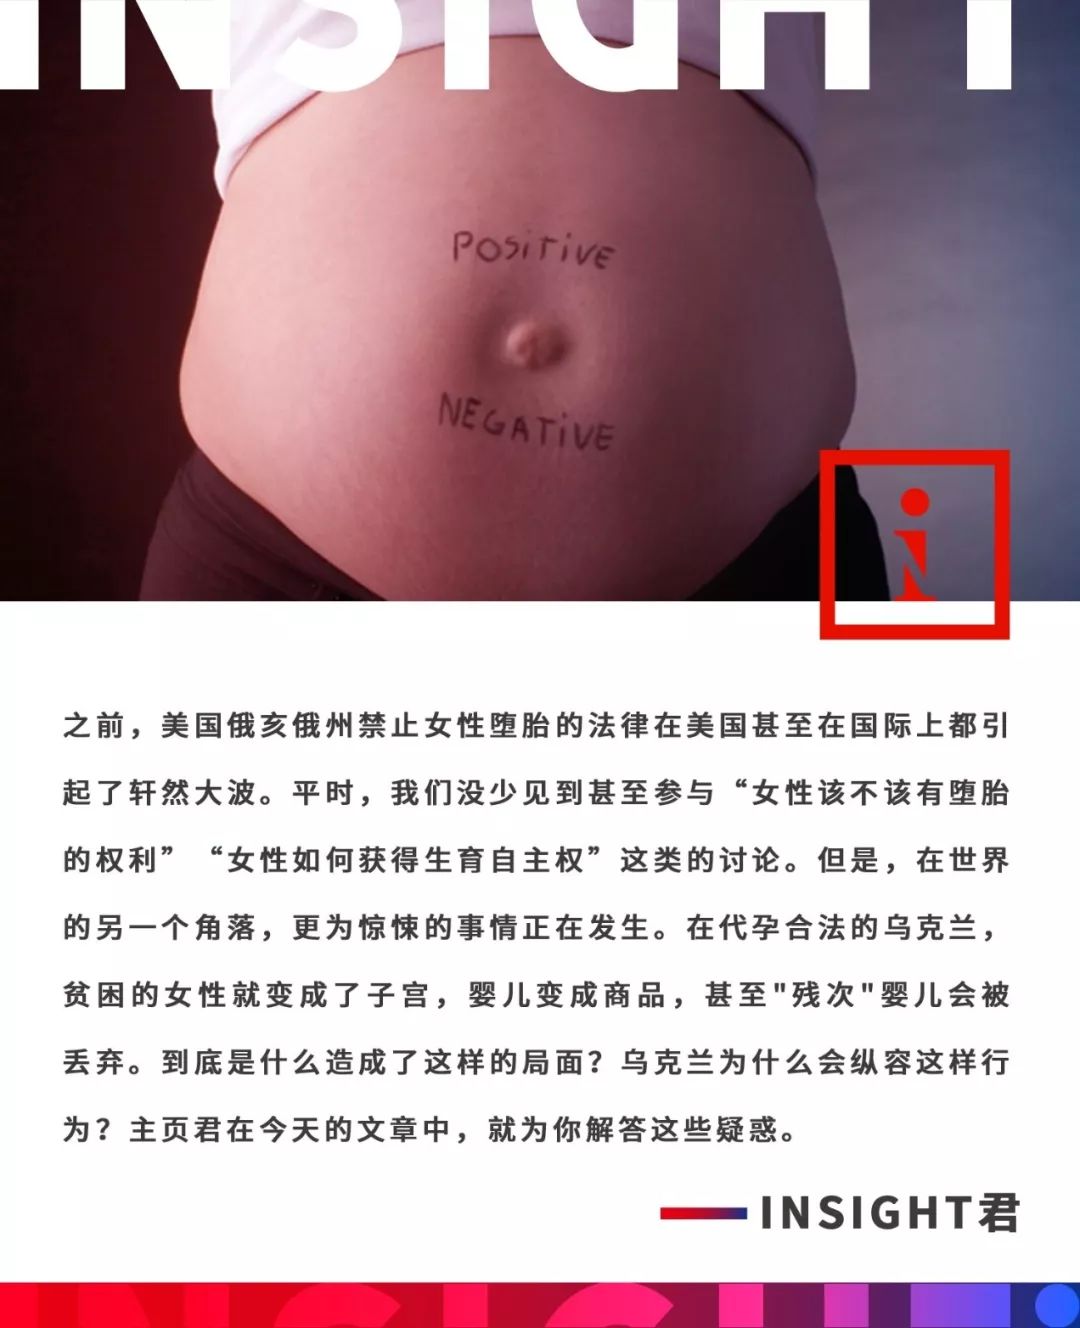 在代孕合法的乌克兰 女性成了生育机器 残次 婴儿会被直接丢弃 Insight视界微信公众号文章